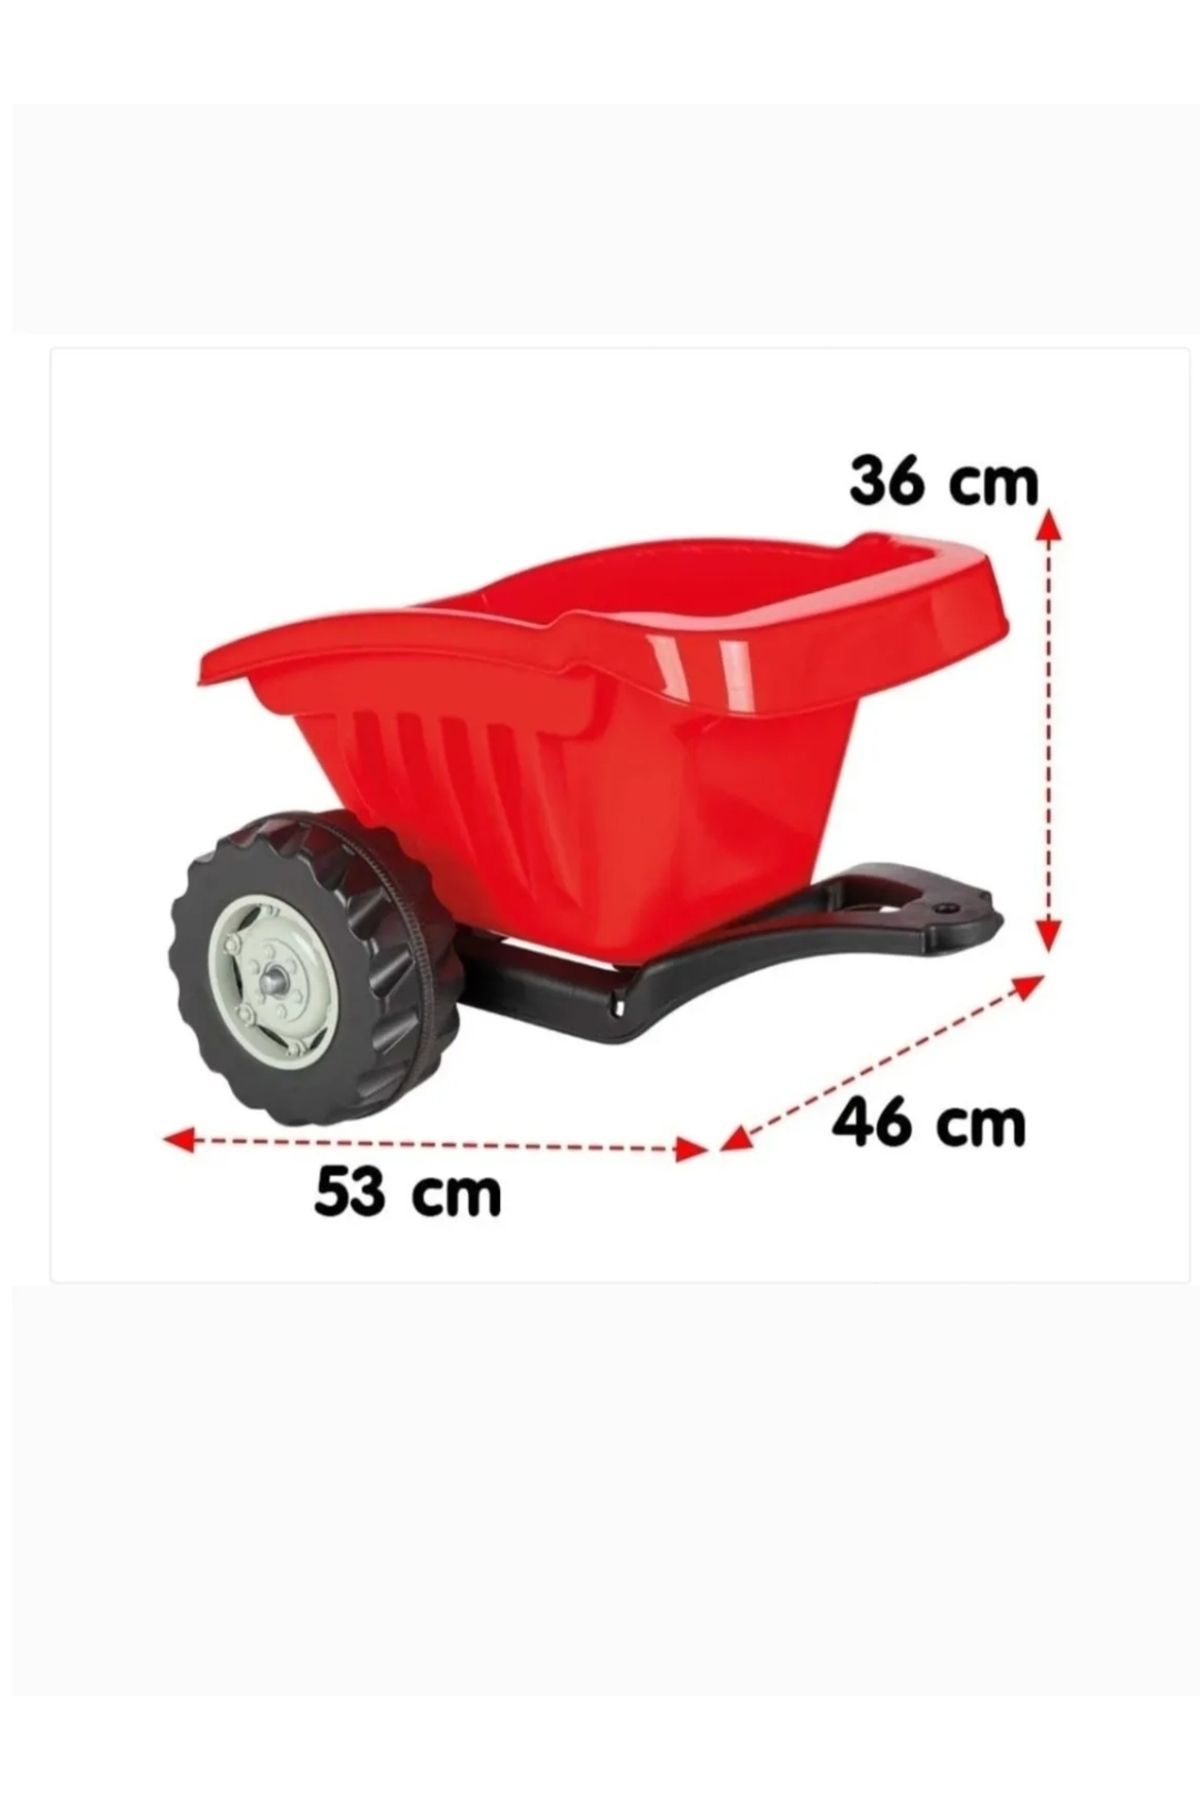 PİLSAN Pilsan Active Traktör ve Power Traktör için Kırmızı Römork (romork)